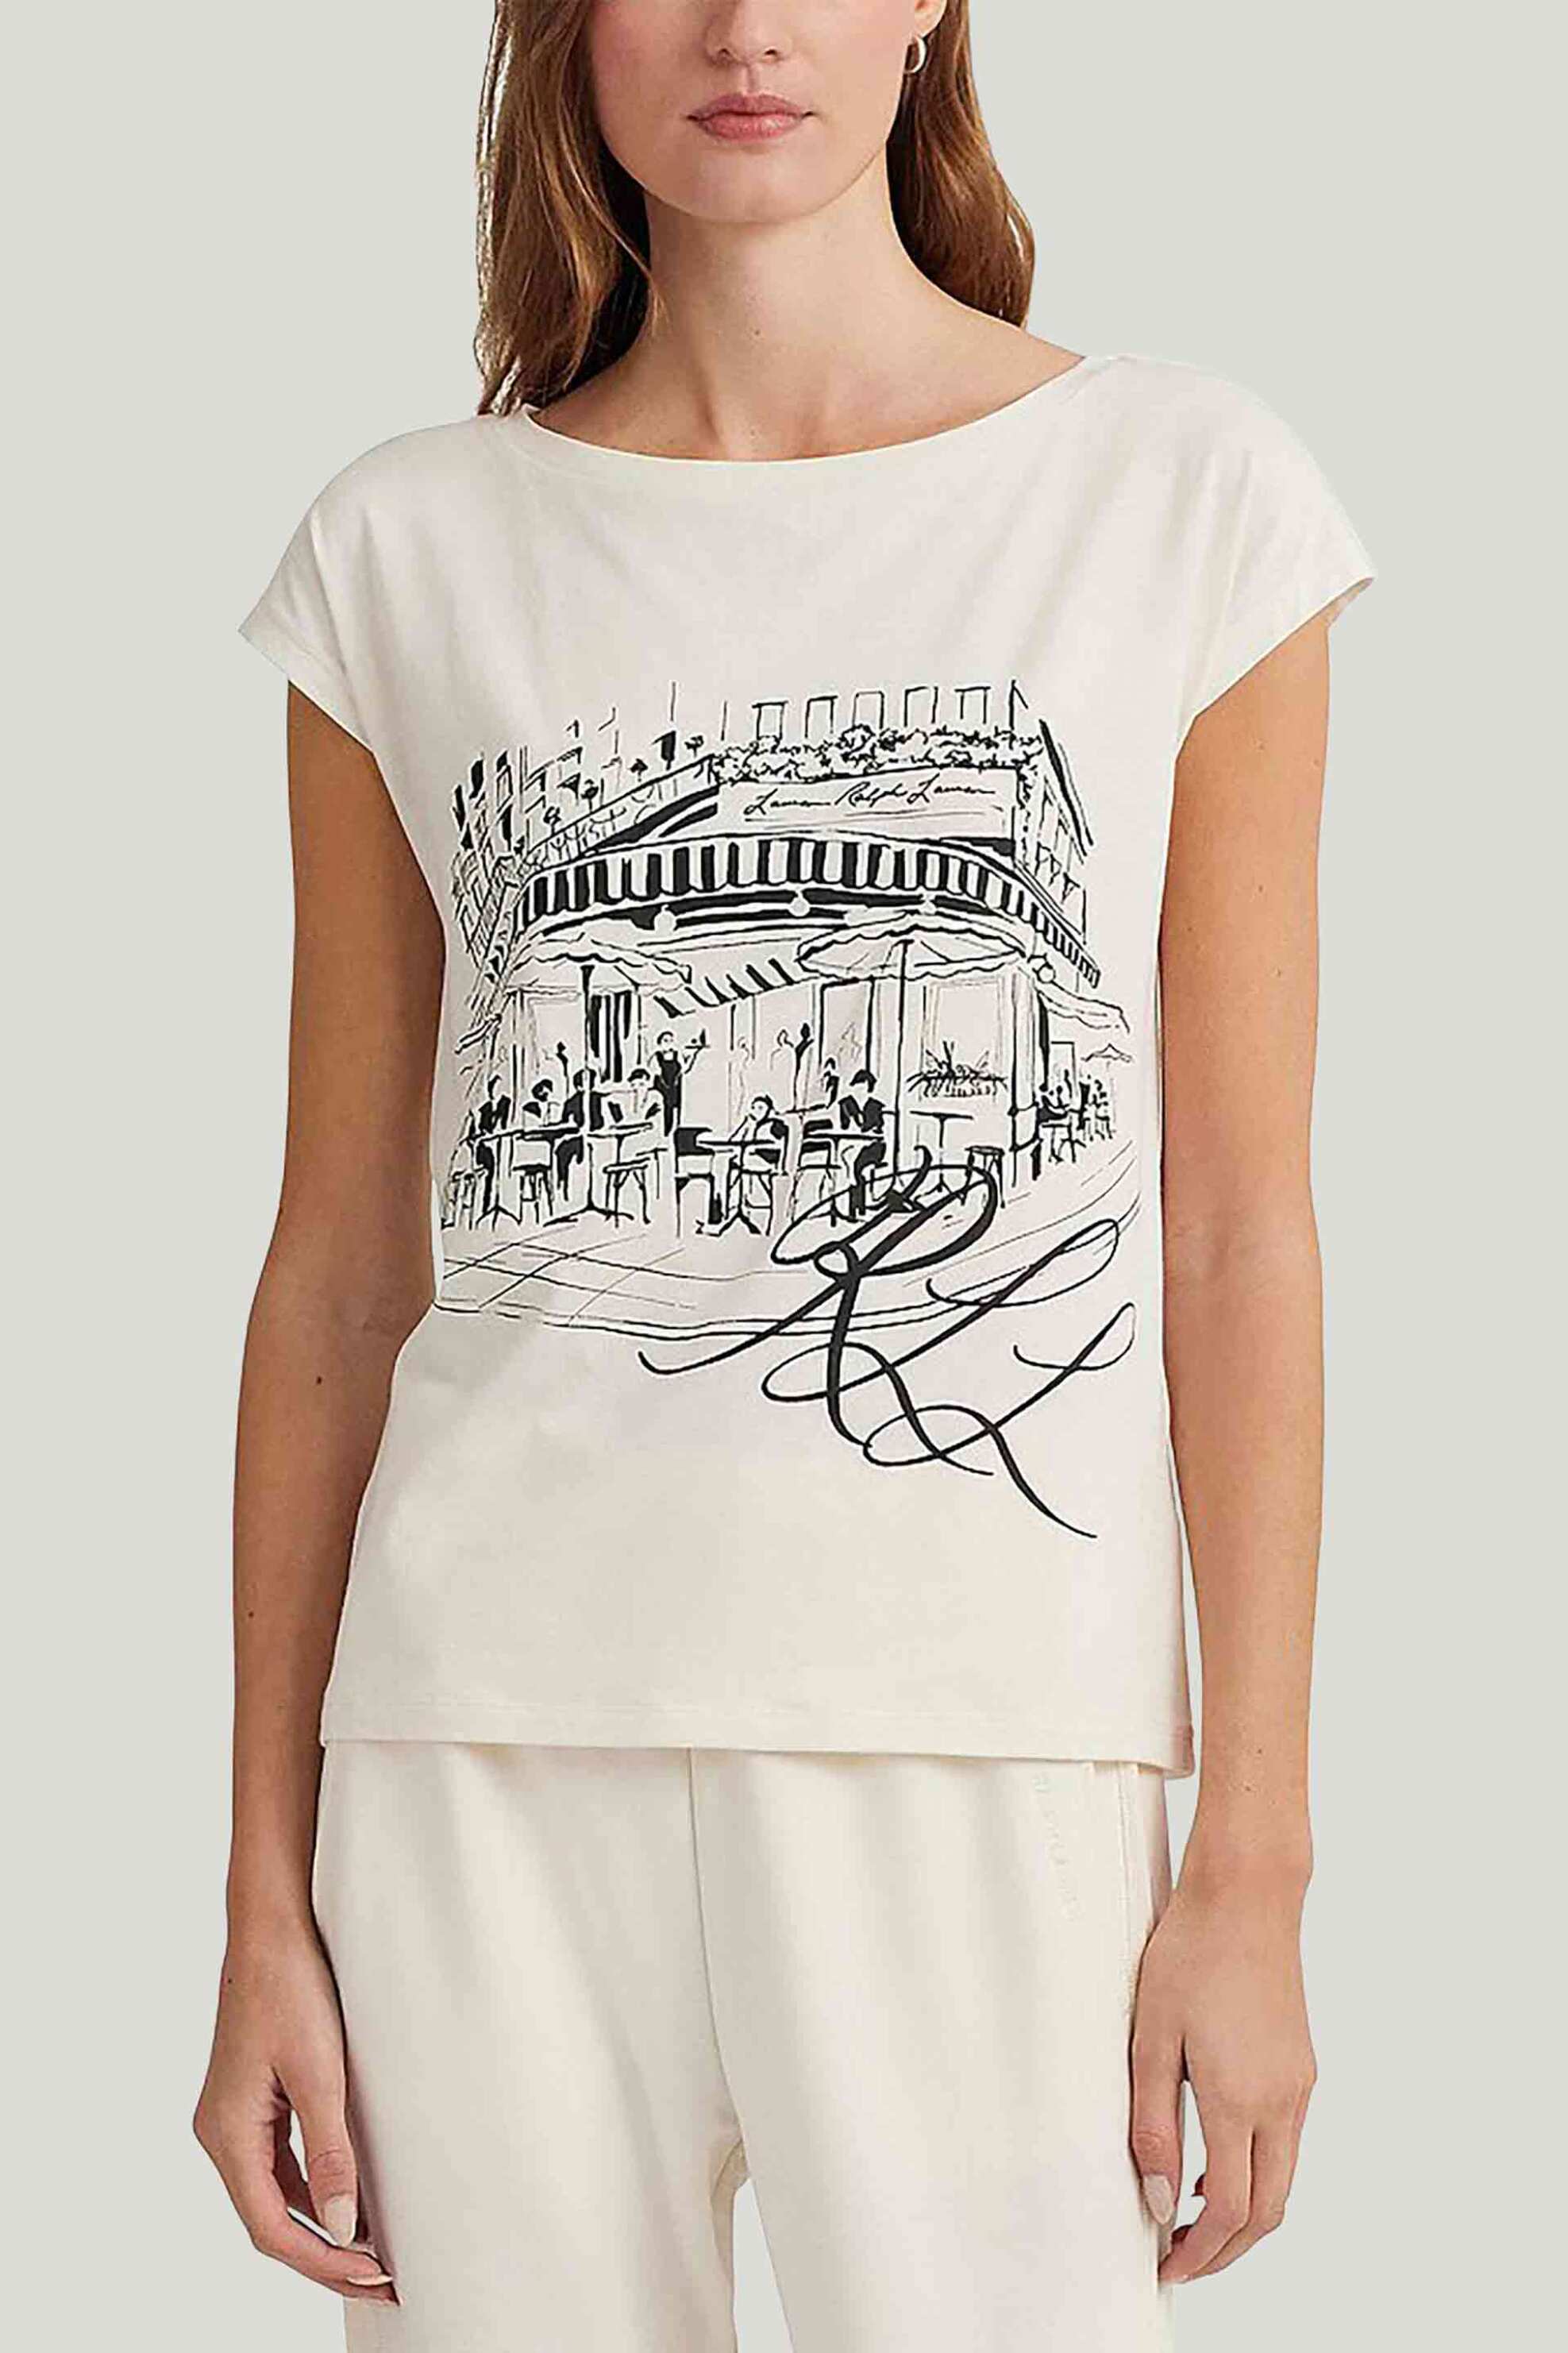 Γυναικεία Ρούχα & Αξεσουάρ > Γυναικεία Ρούχα > Γυναικεία Τοπ > Γυναικεία T-Shirts Lauren Ralph Lauren γυναικείο T-shirt μονόχρωμο με contrast graphic και monogram print - 200933300001 Κρέμ